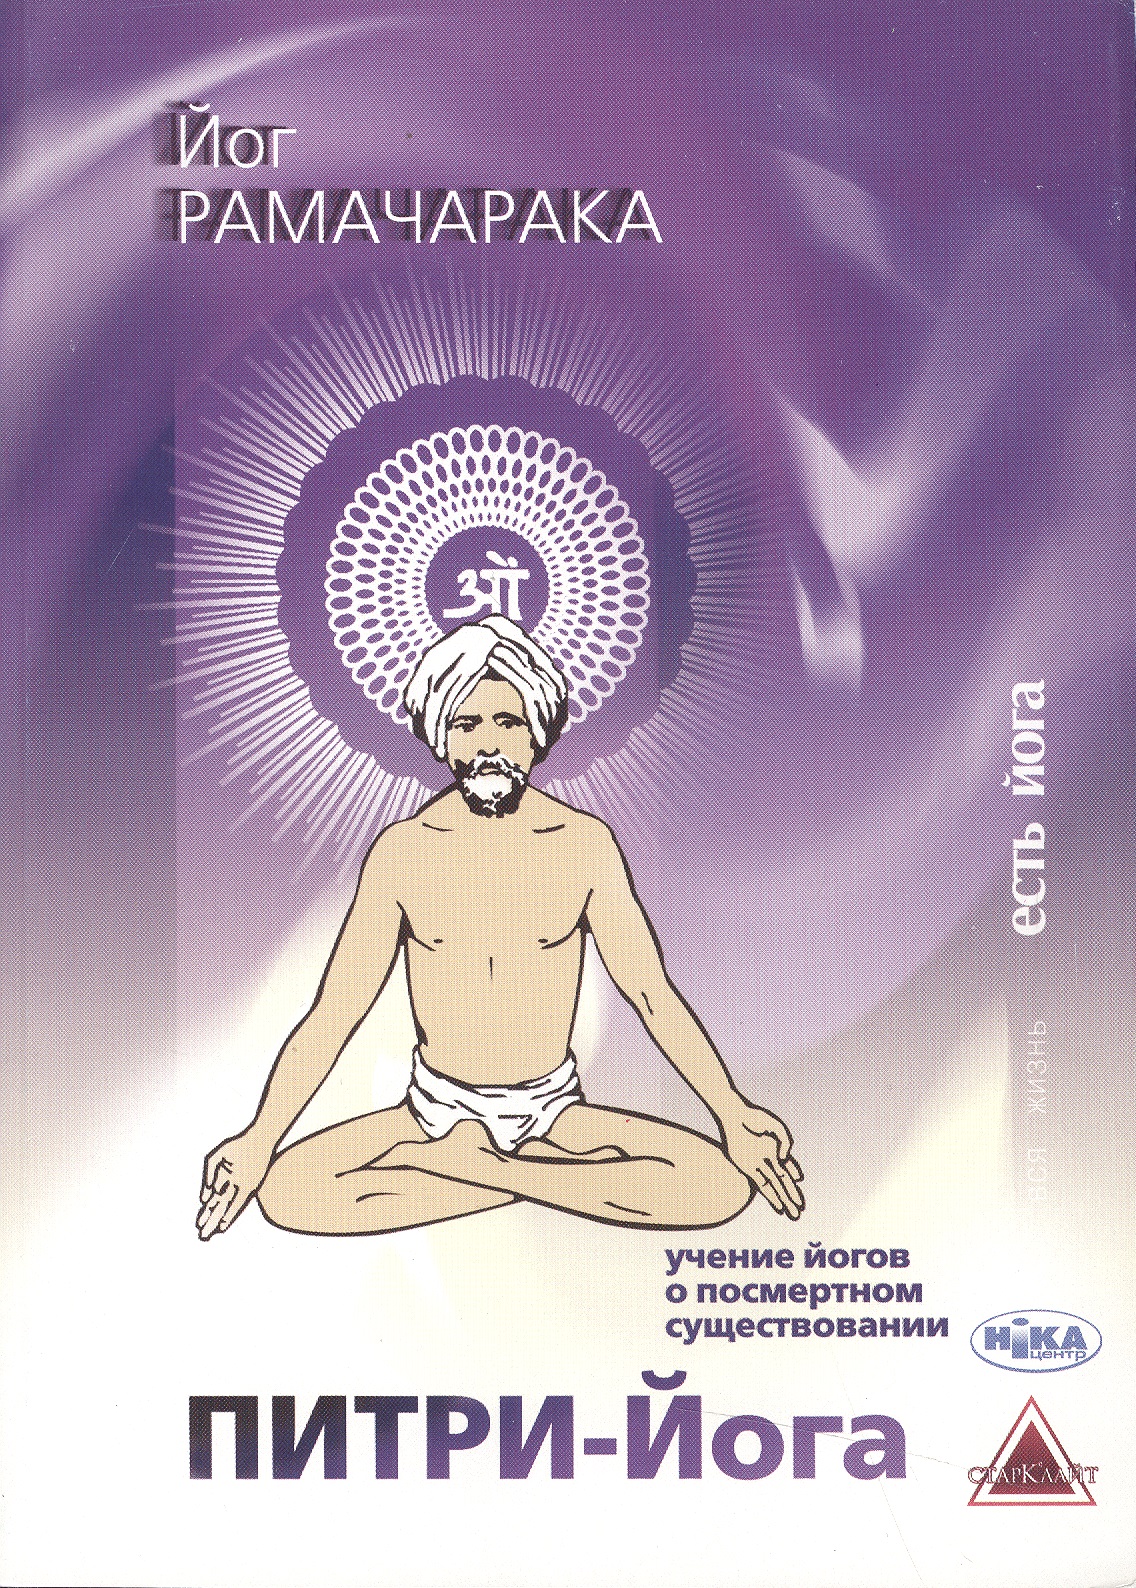 Питри-Йога Учение йогов о посмертном существовании... (мВЖЕЙ) Рамачарака рамачарака наука о дыхании индийских йогов хатха йога